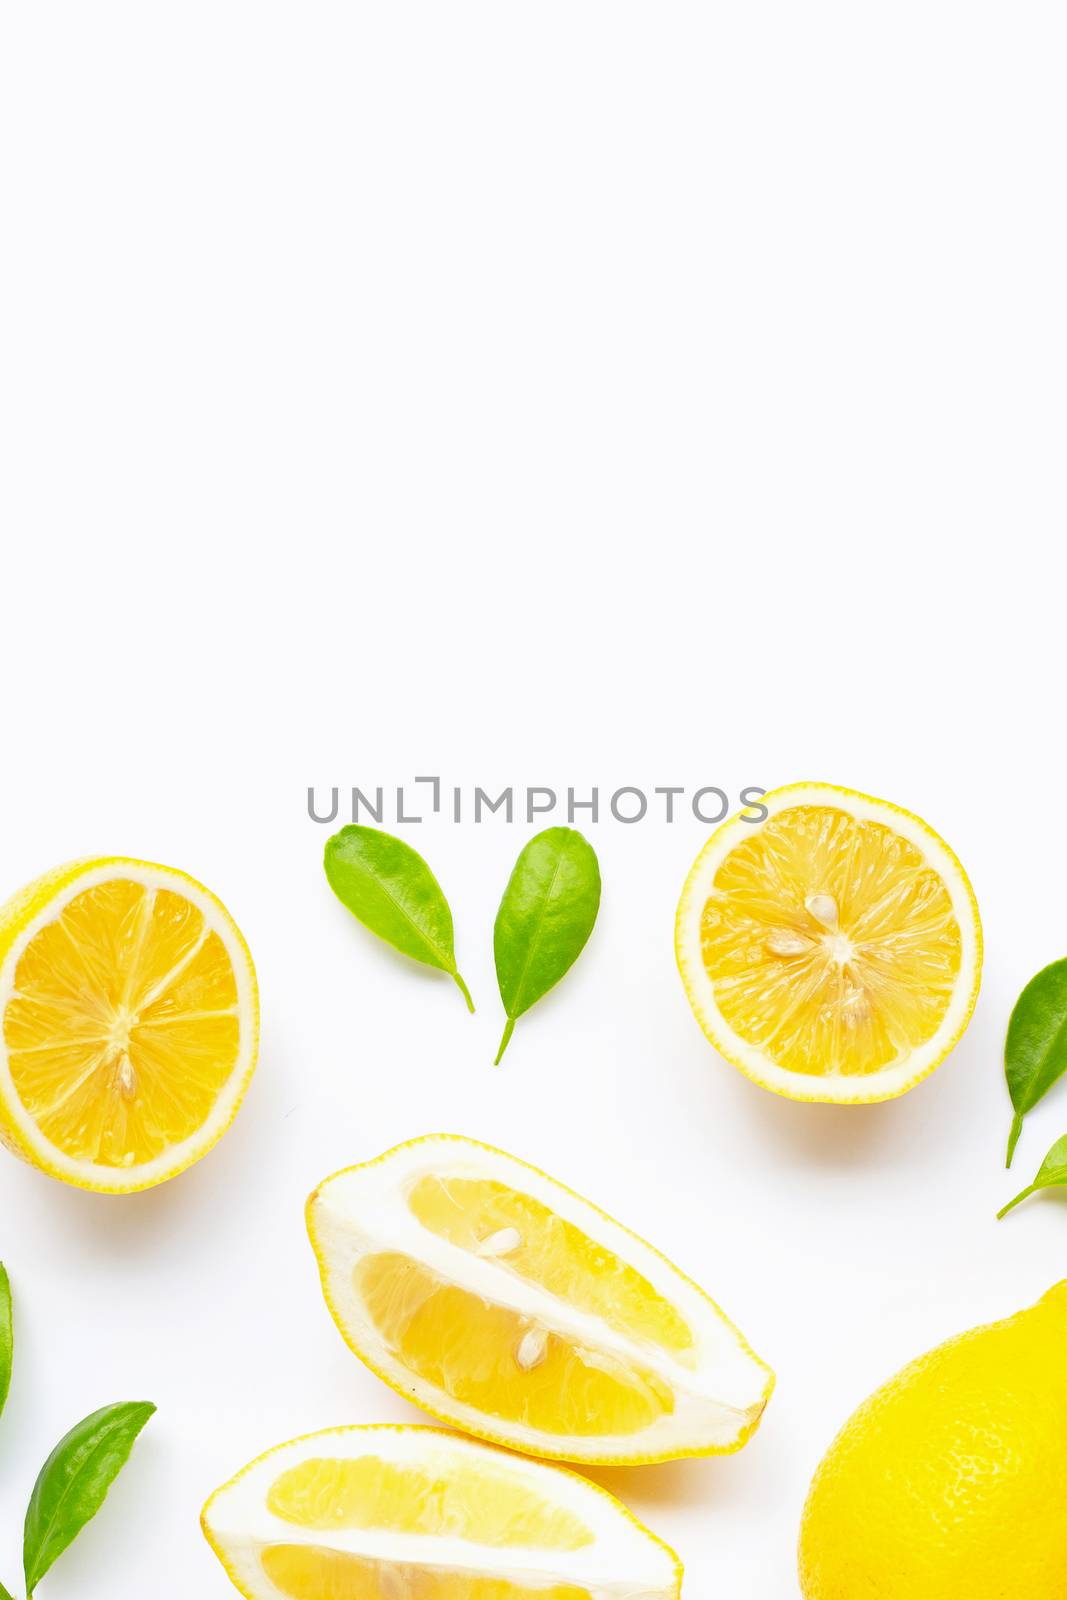 Lemon  isolated on white background.  by Bowonpat